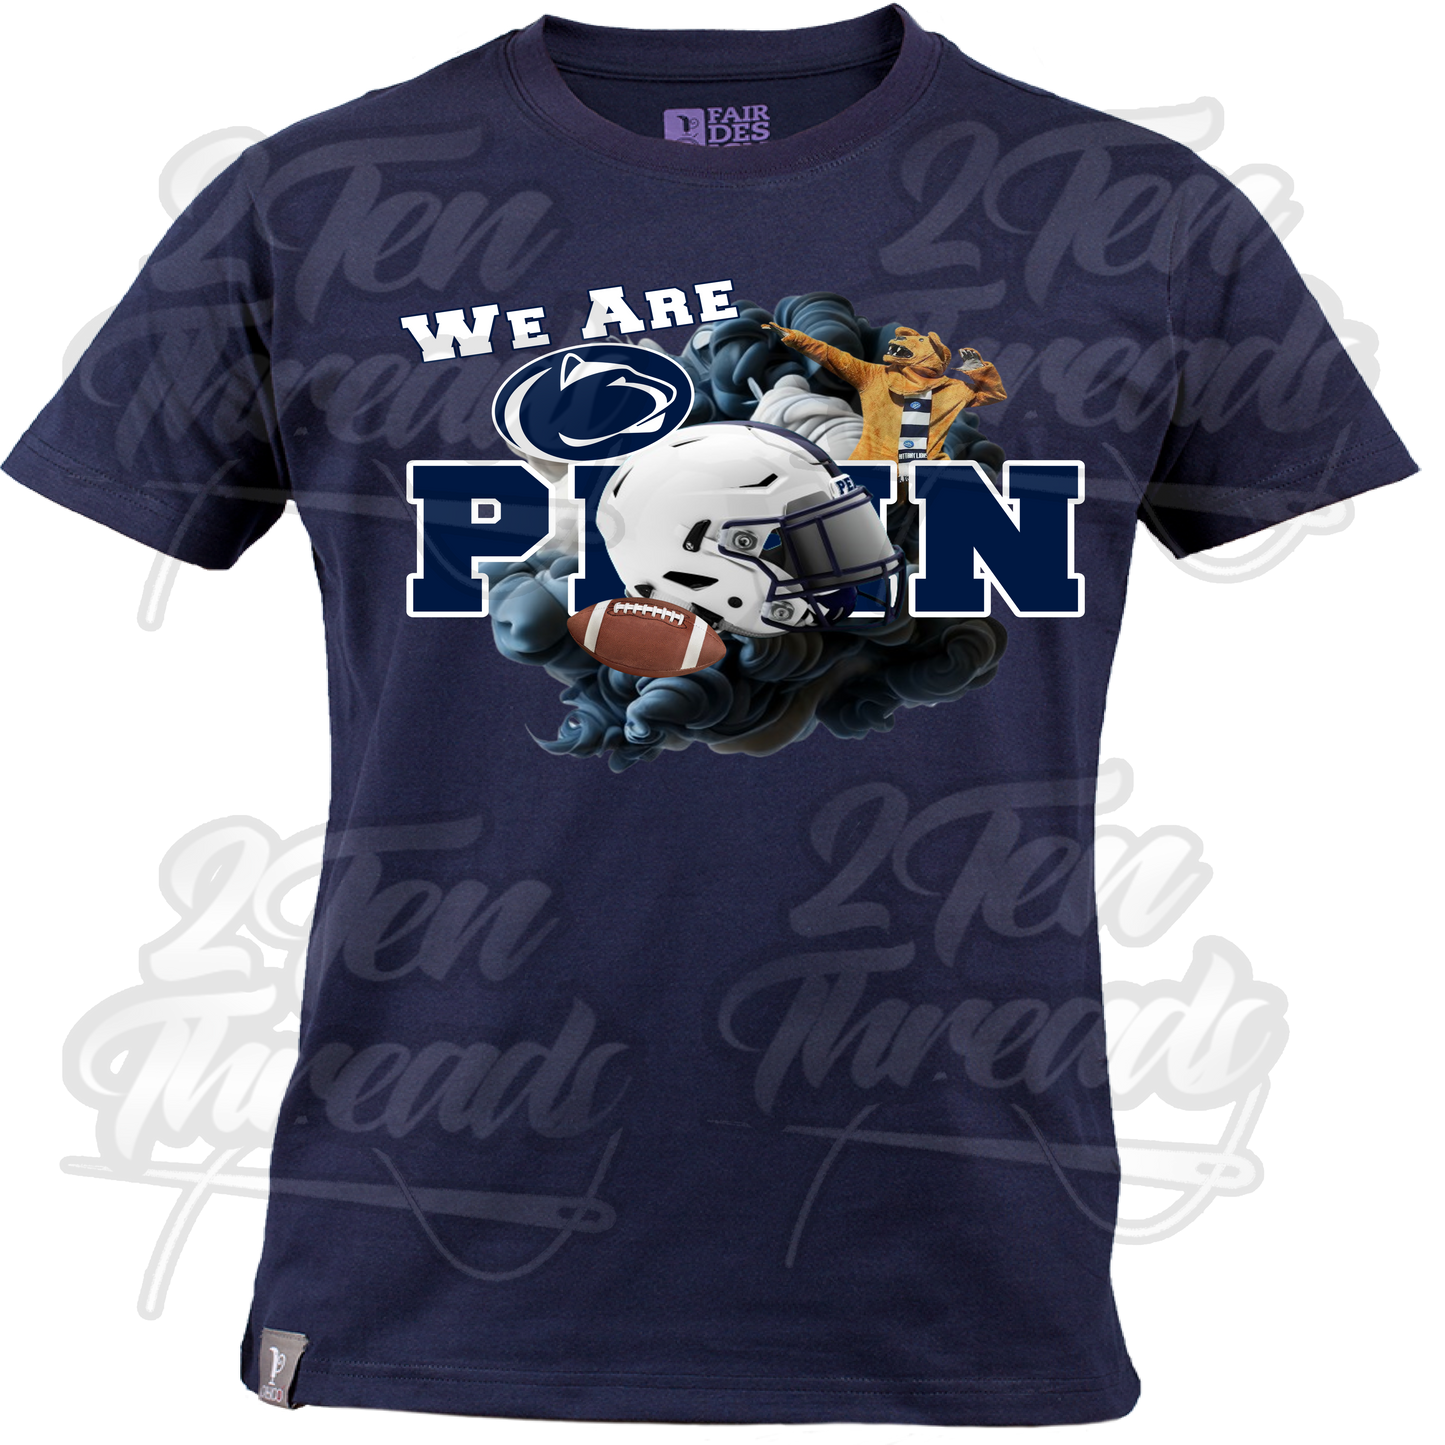 Penn State Custom shirt